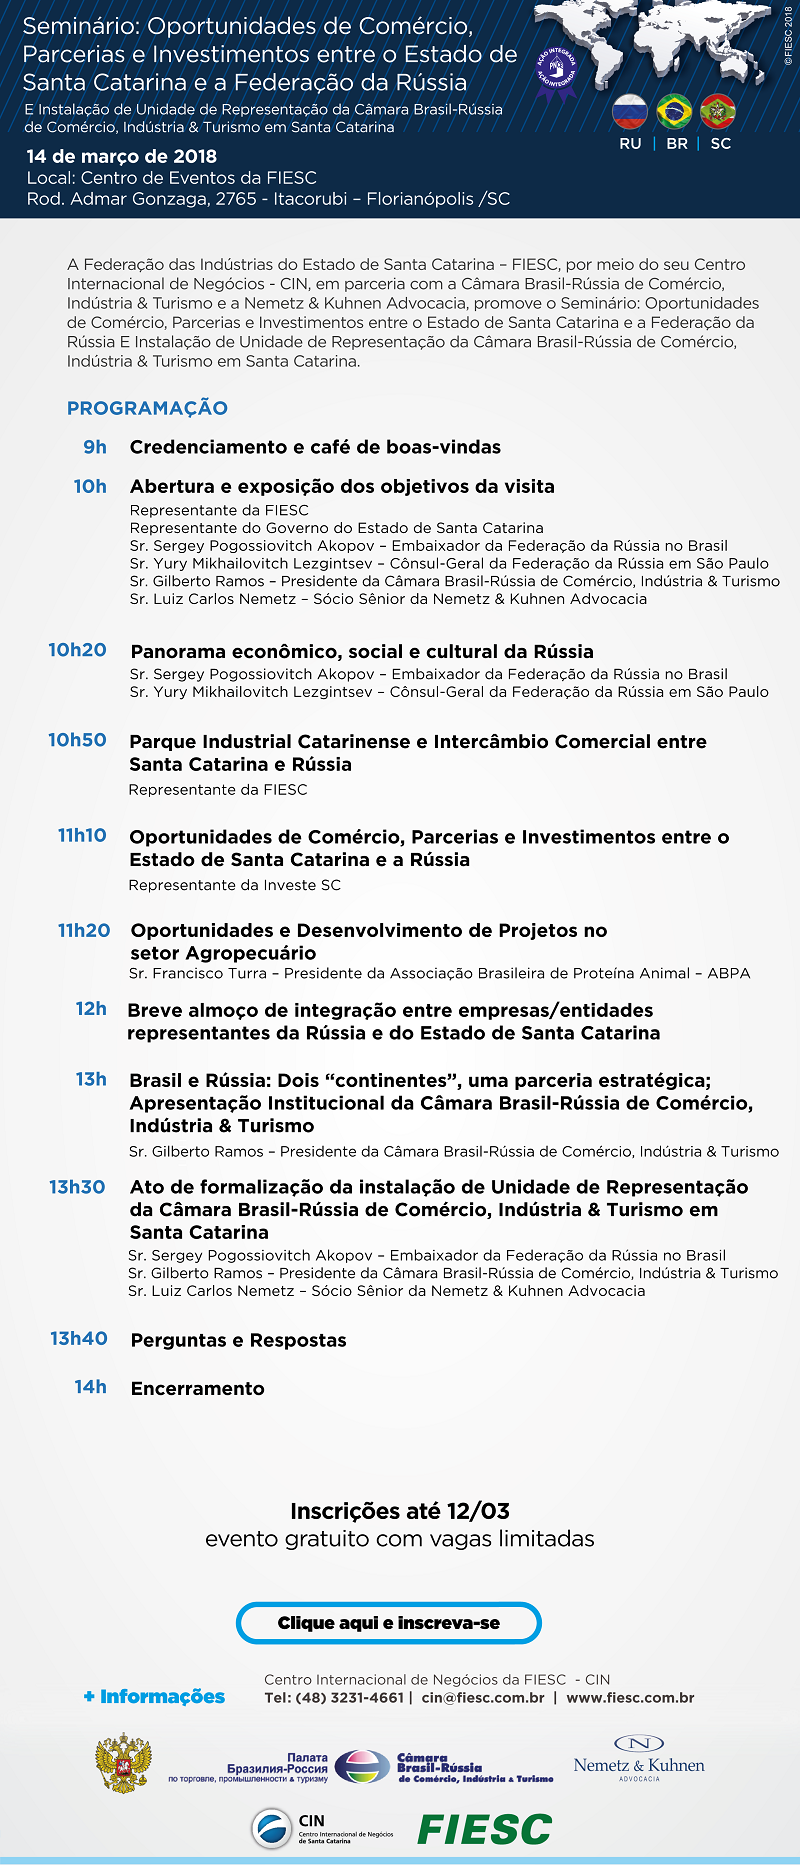 Seminário: Oportunidades de Comércio, Parcerias e Investimentos entre o Estado de Santa Catarina e a Federação da Rúsia